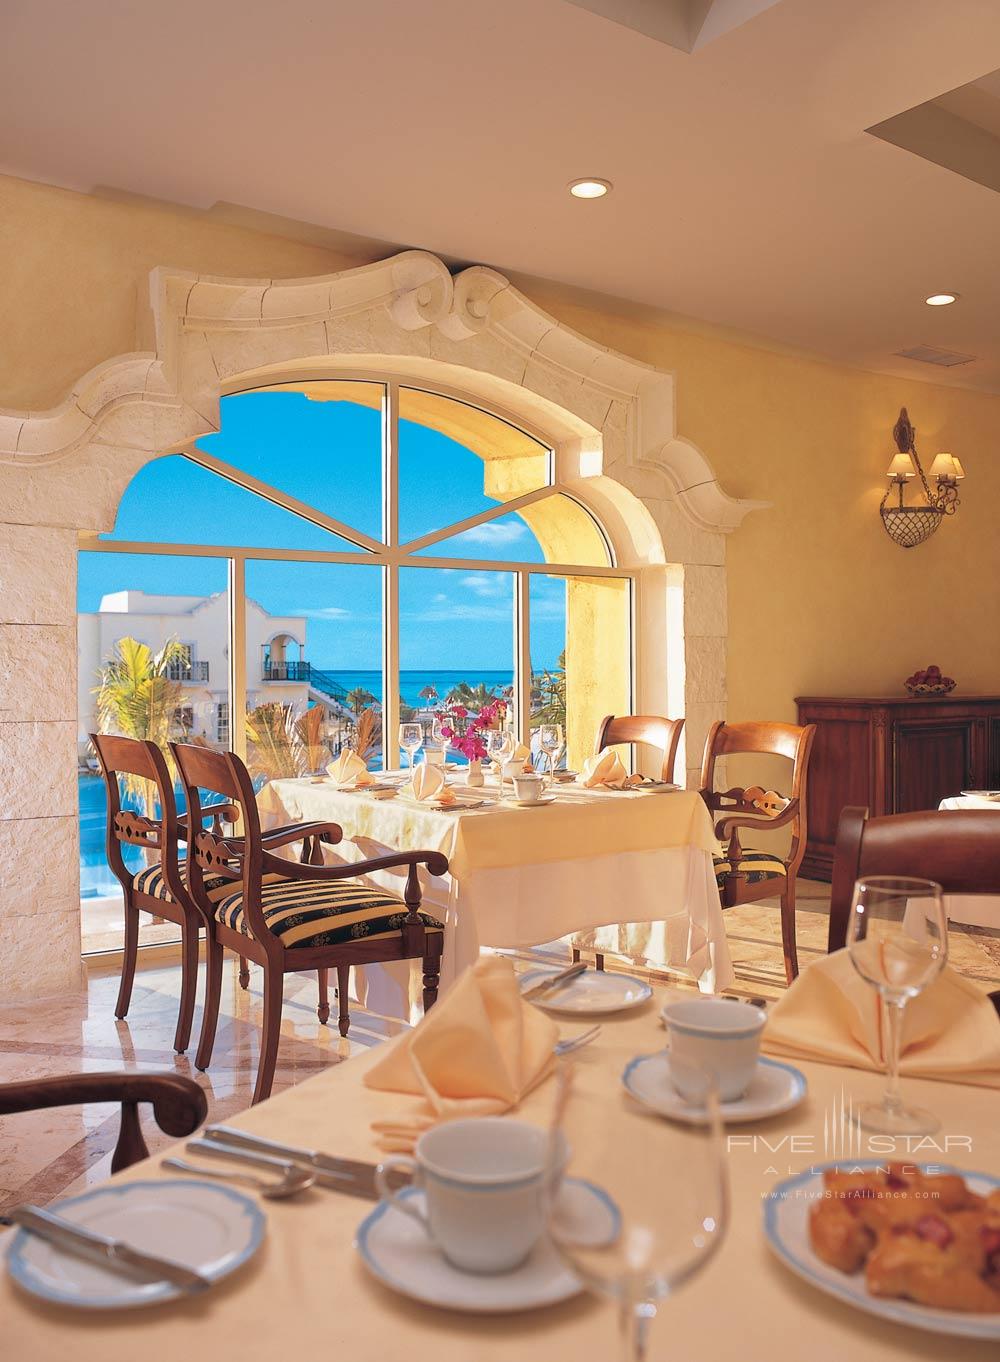 La Riviera Restaurant at Secrets Capri Riviera Cancun in Playa del Carmen, Mexico